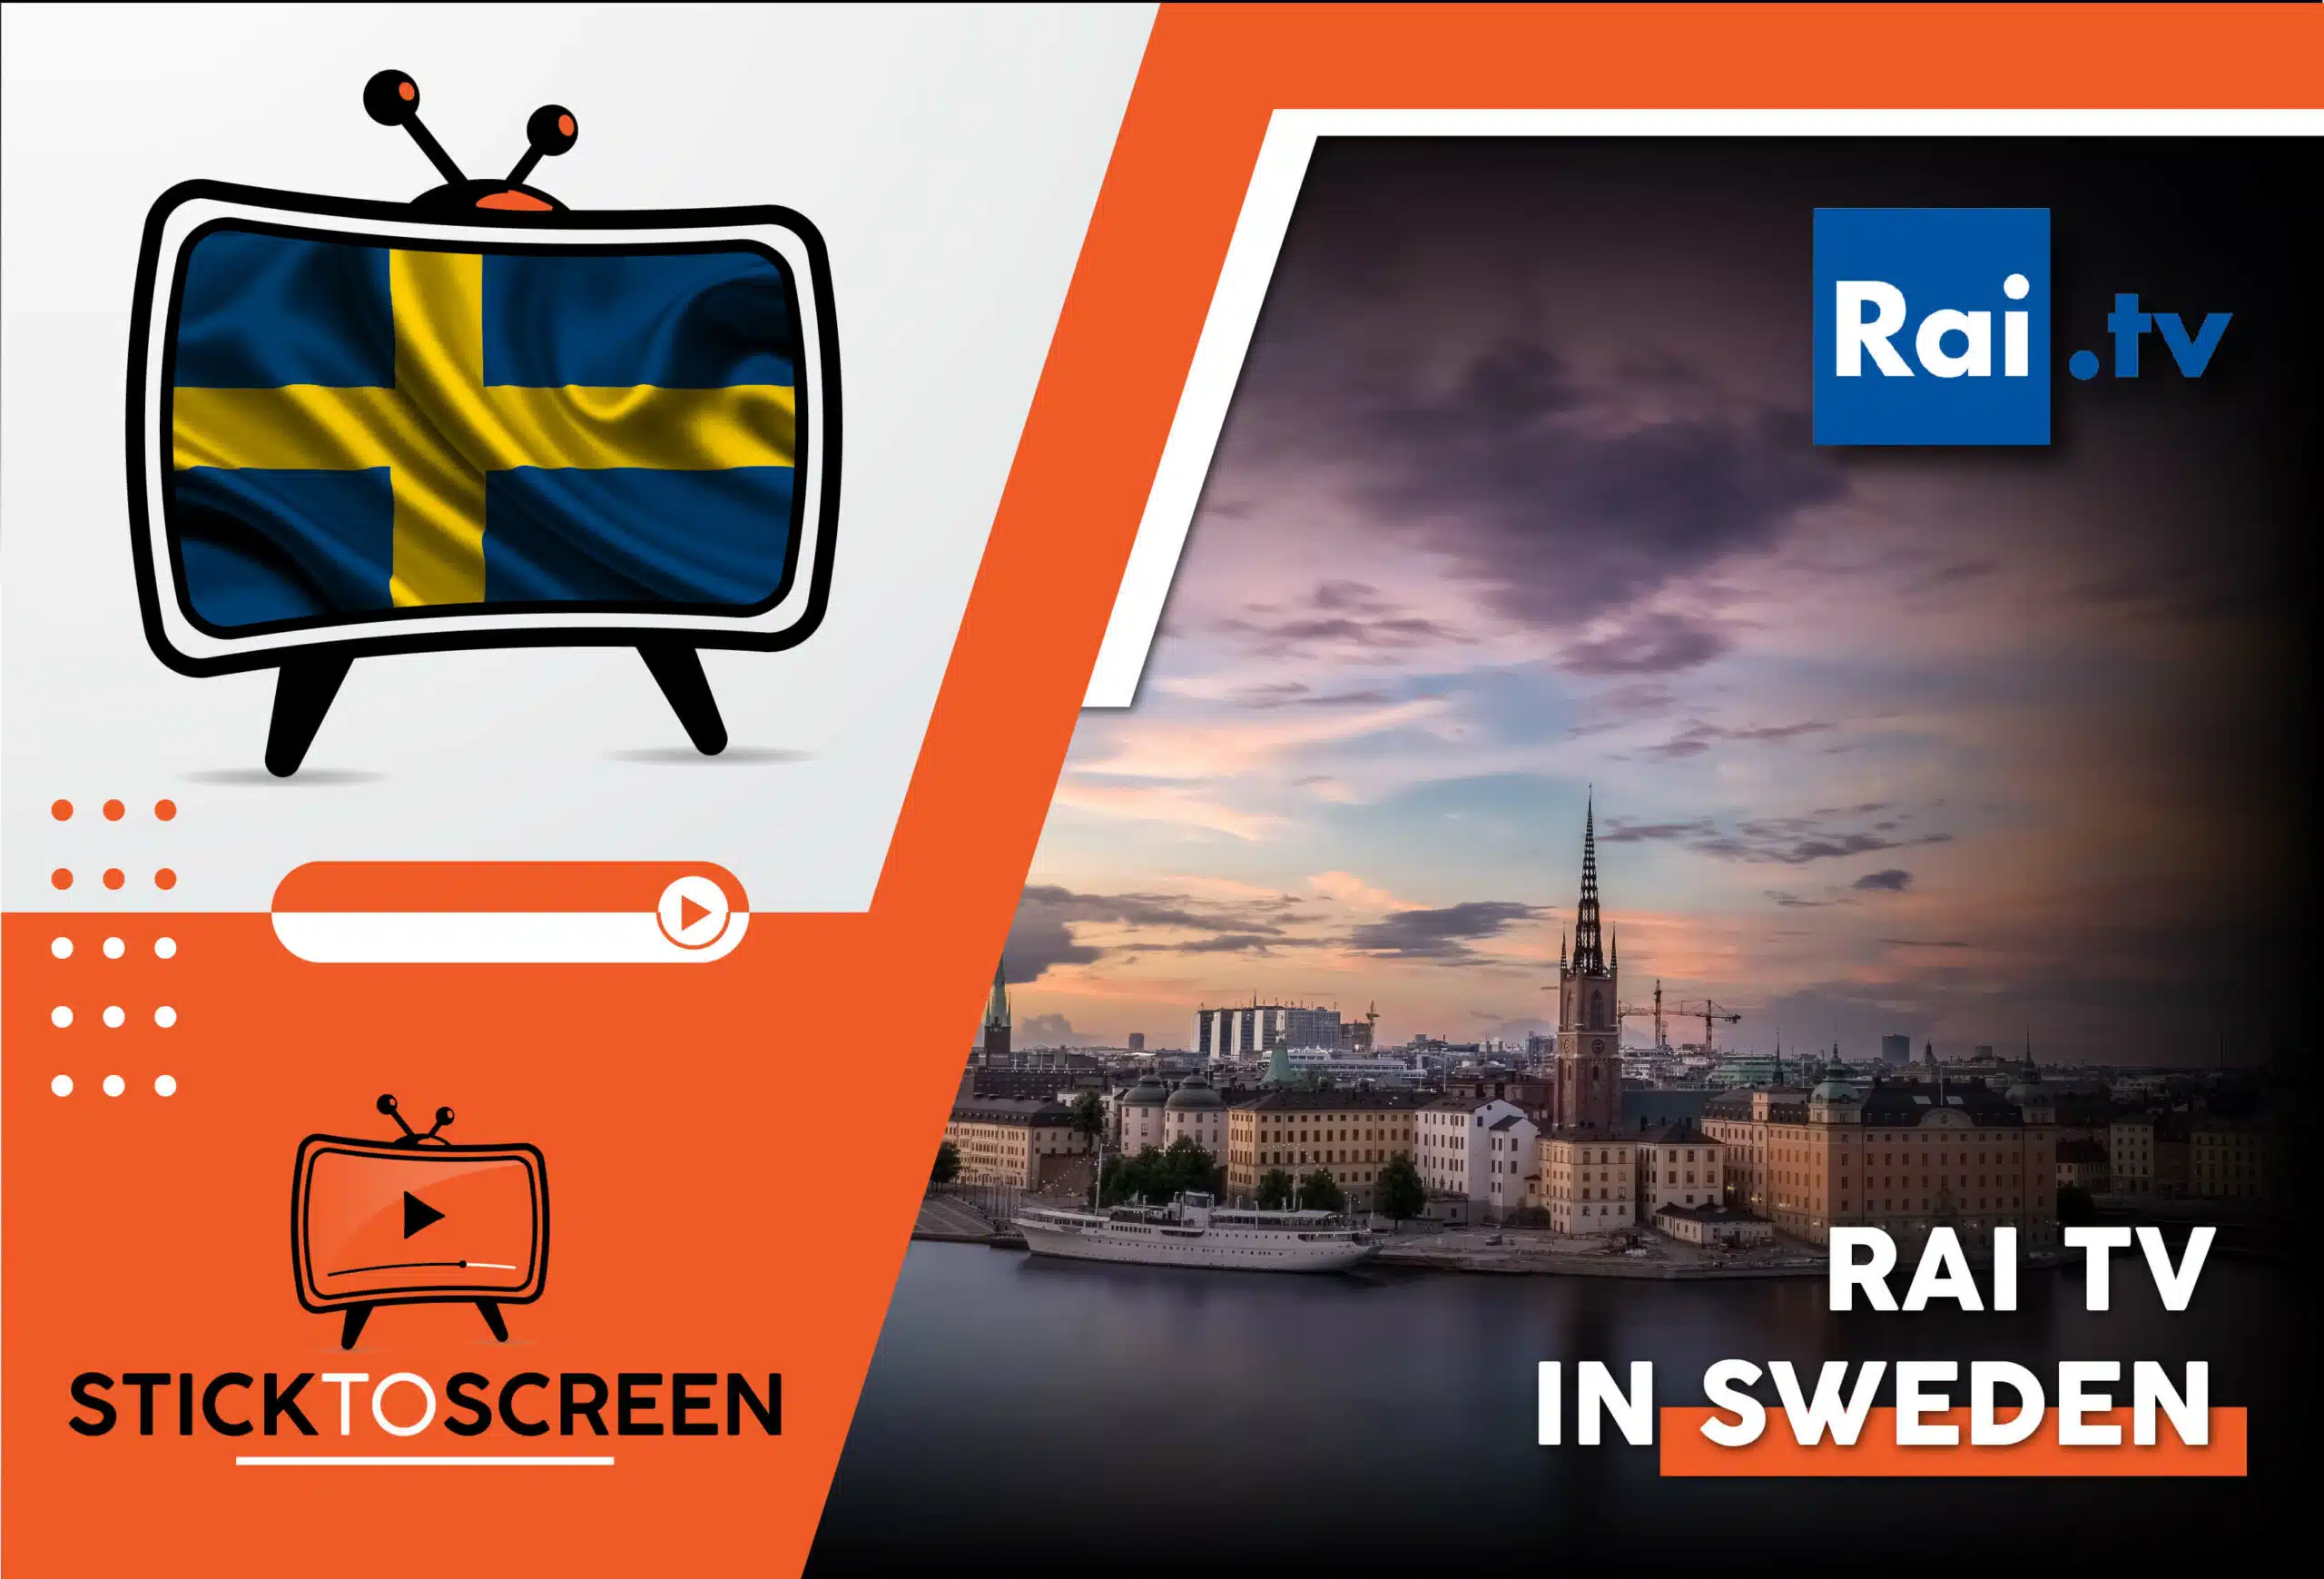 Watch Rai TV in Sweden